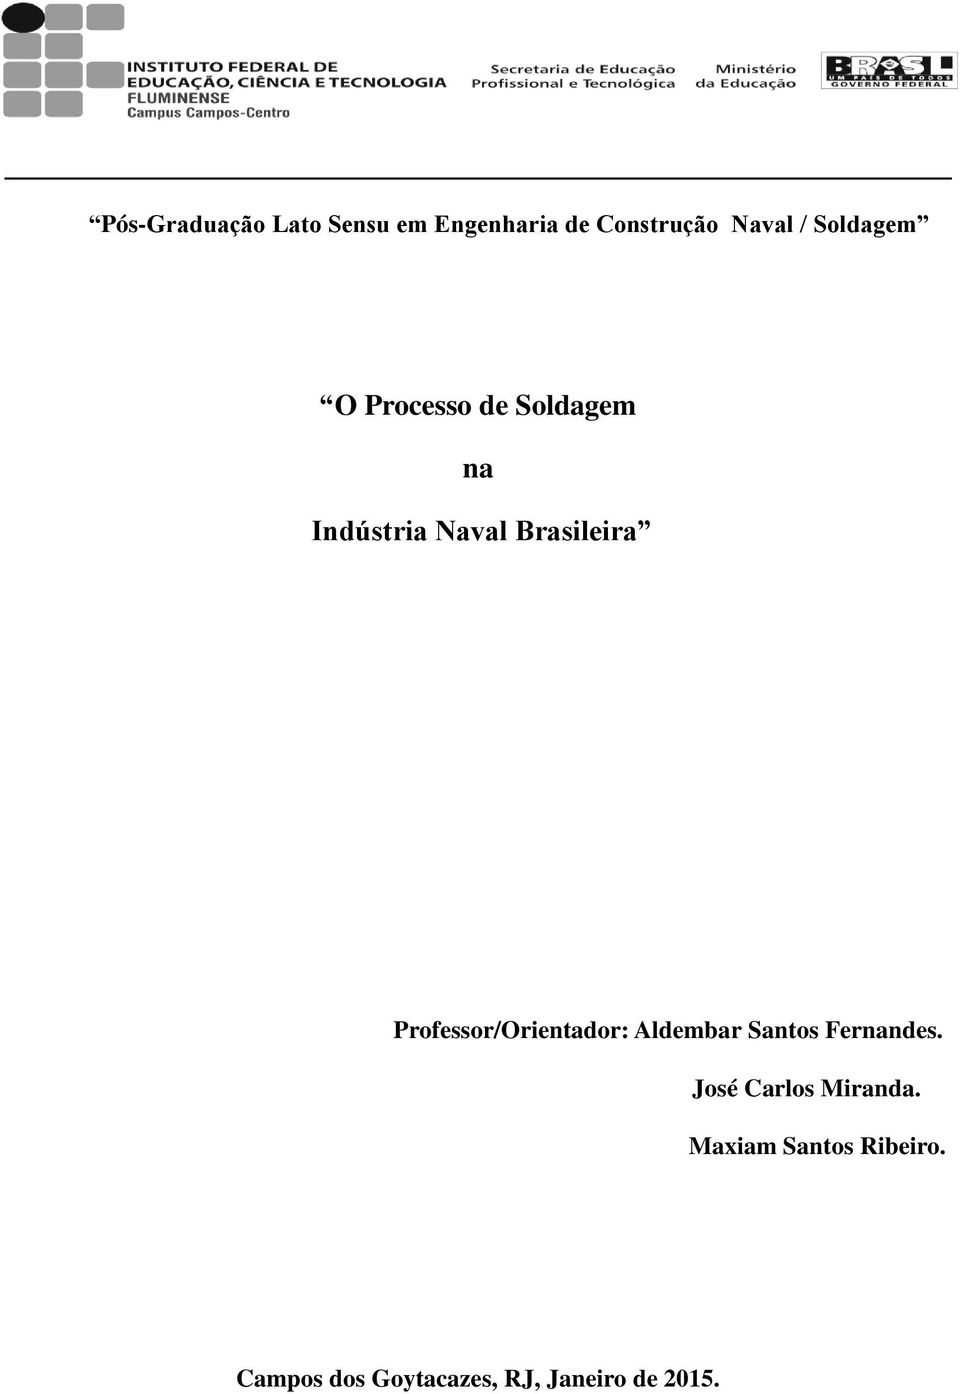 Professor/Orientador: Aldembar Santos Fernandes.